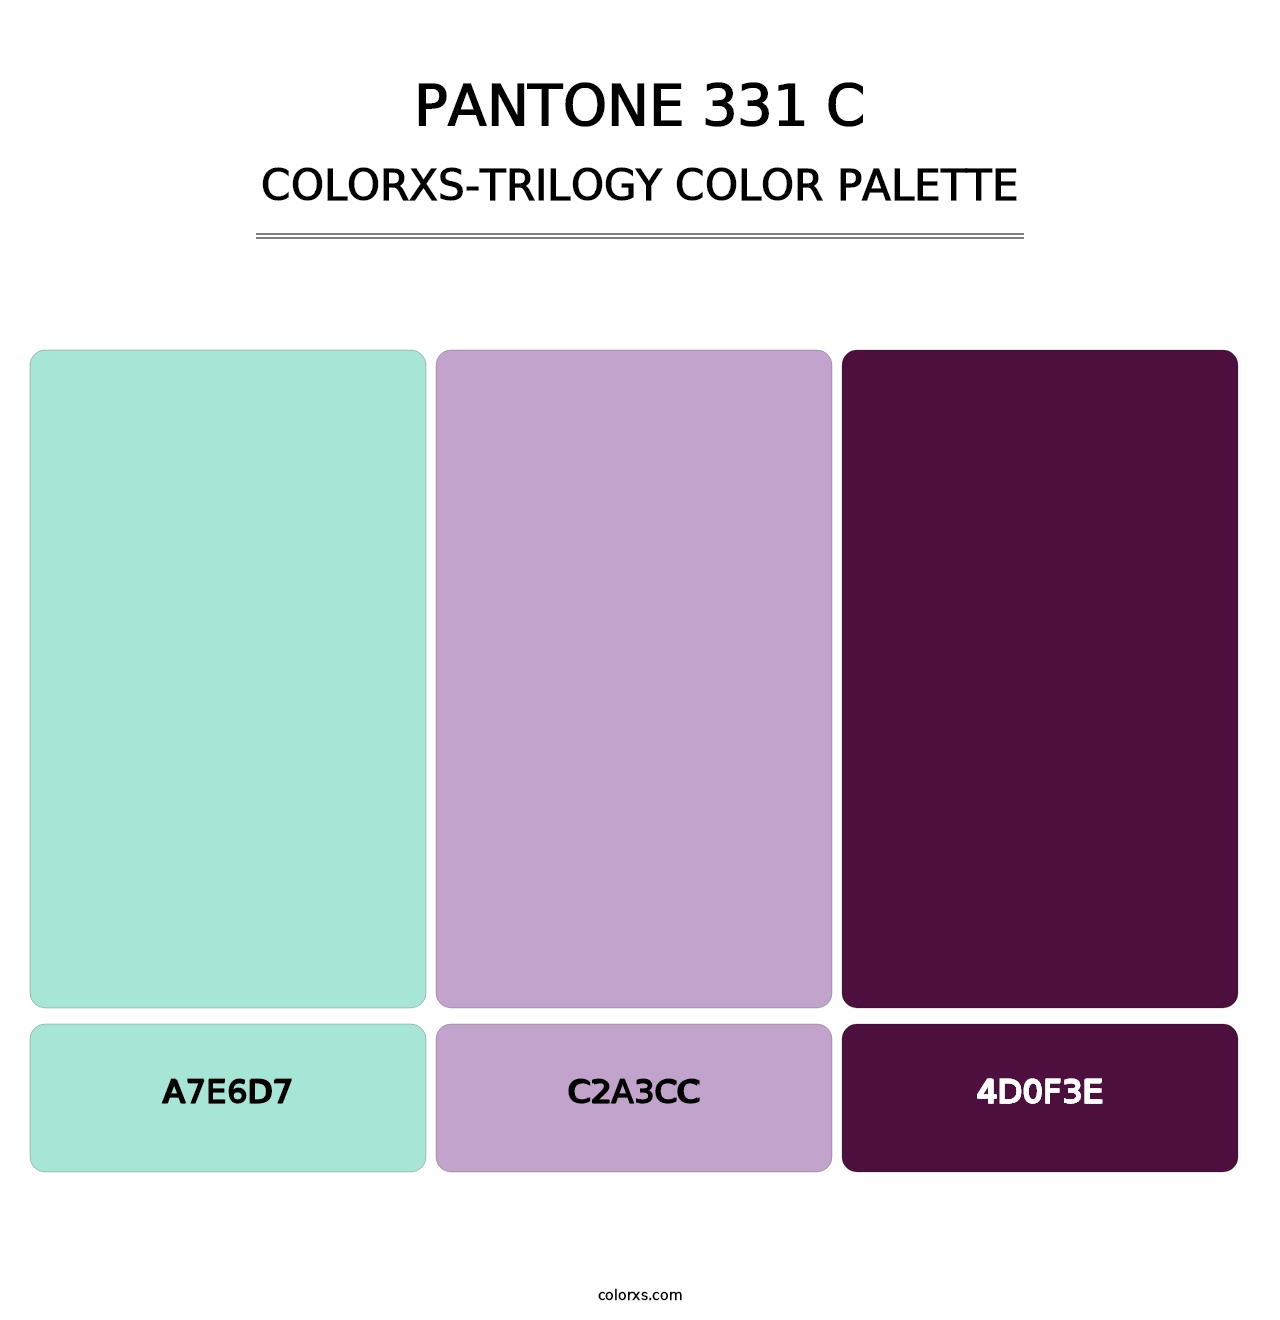 PANTONE 331 C - Colorxs Trilogy Palette